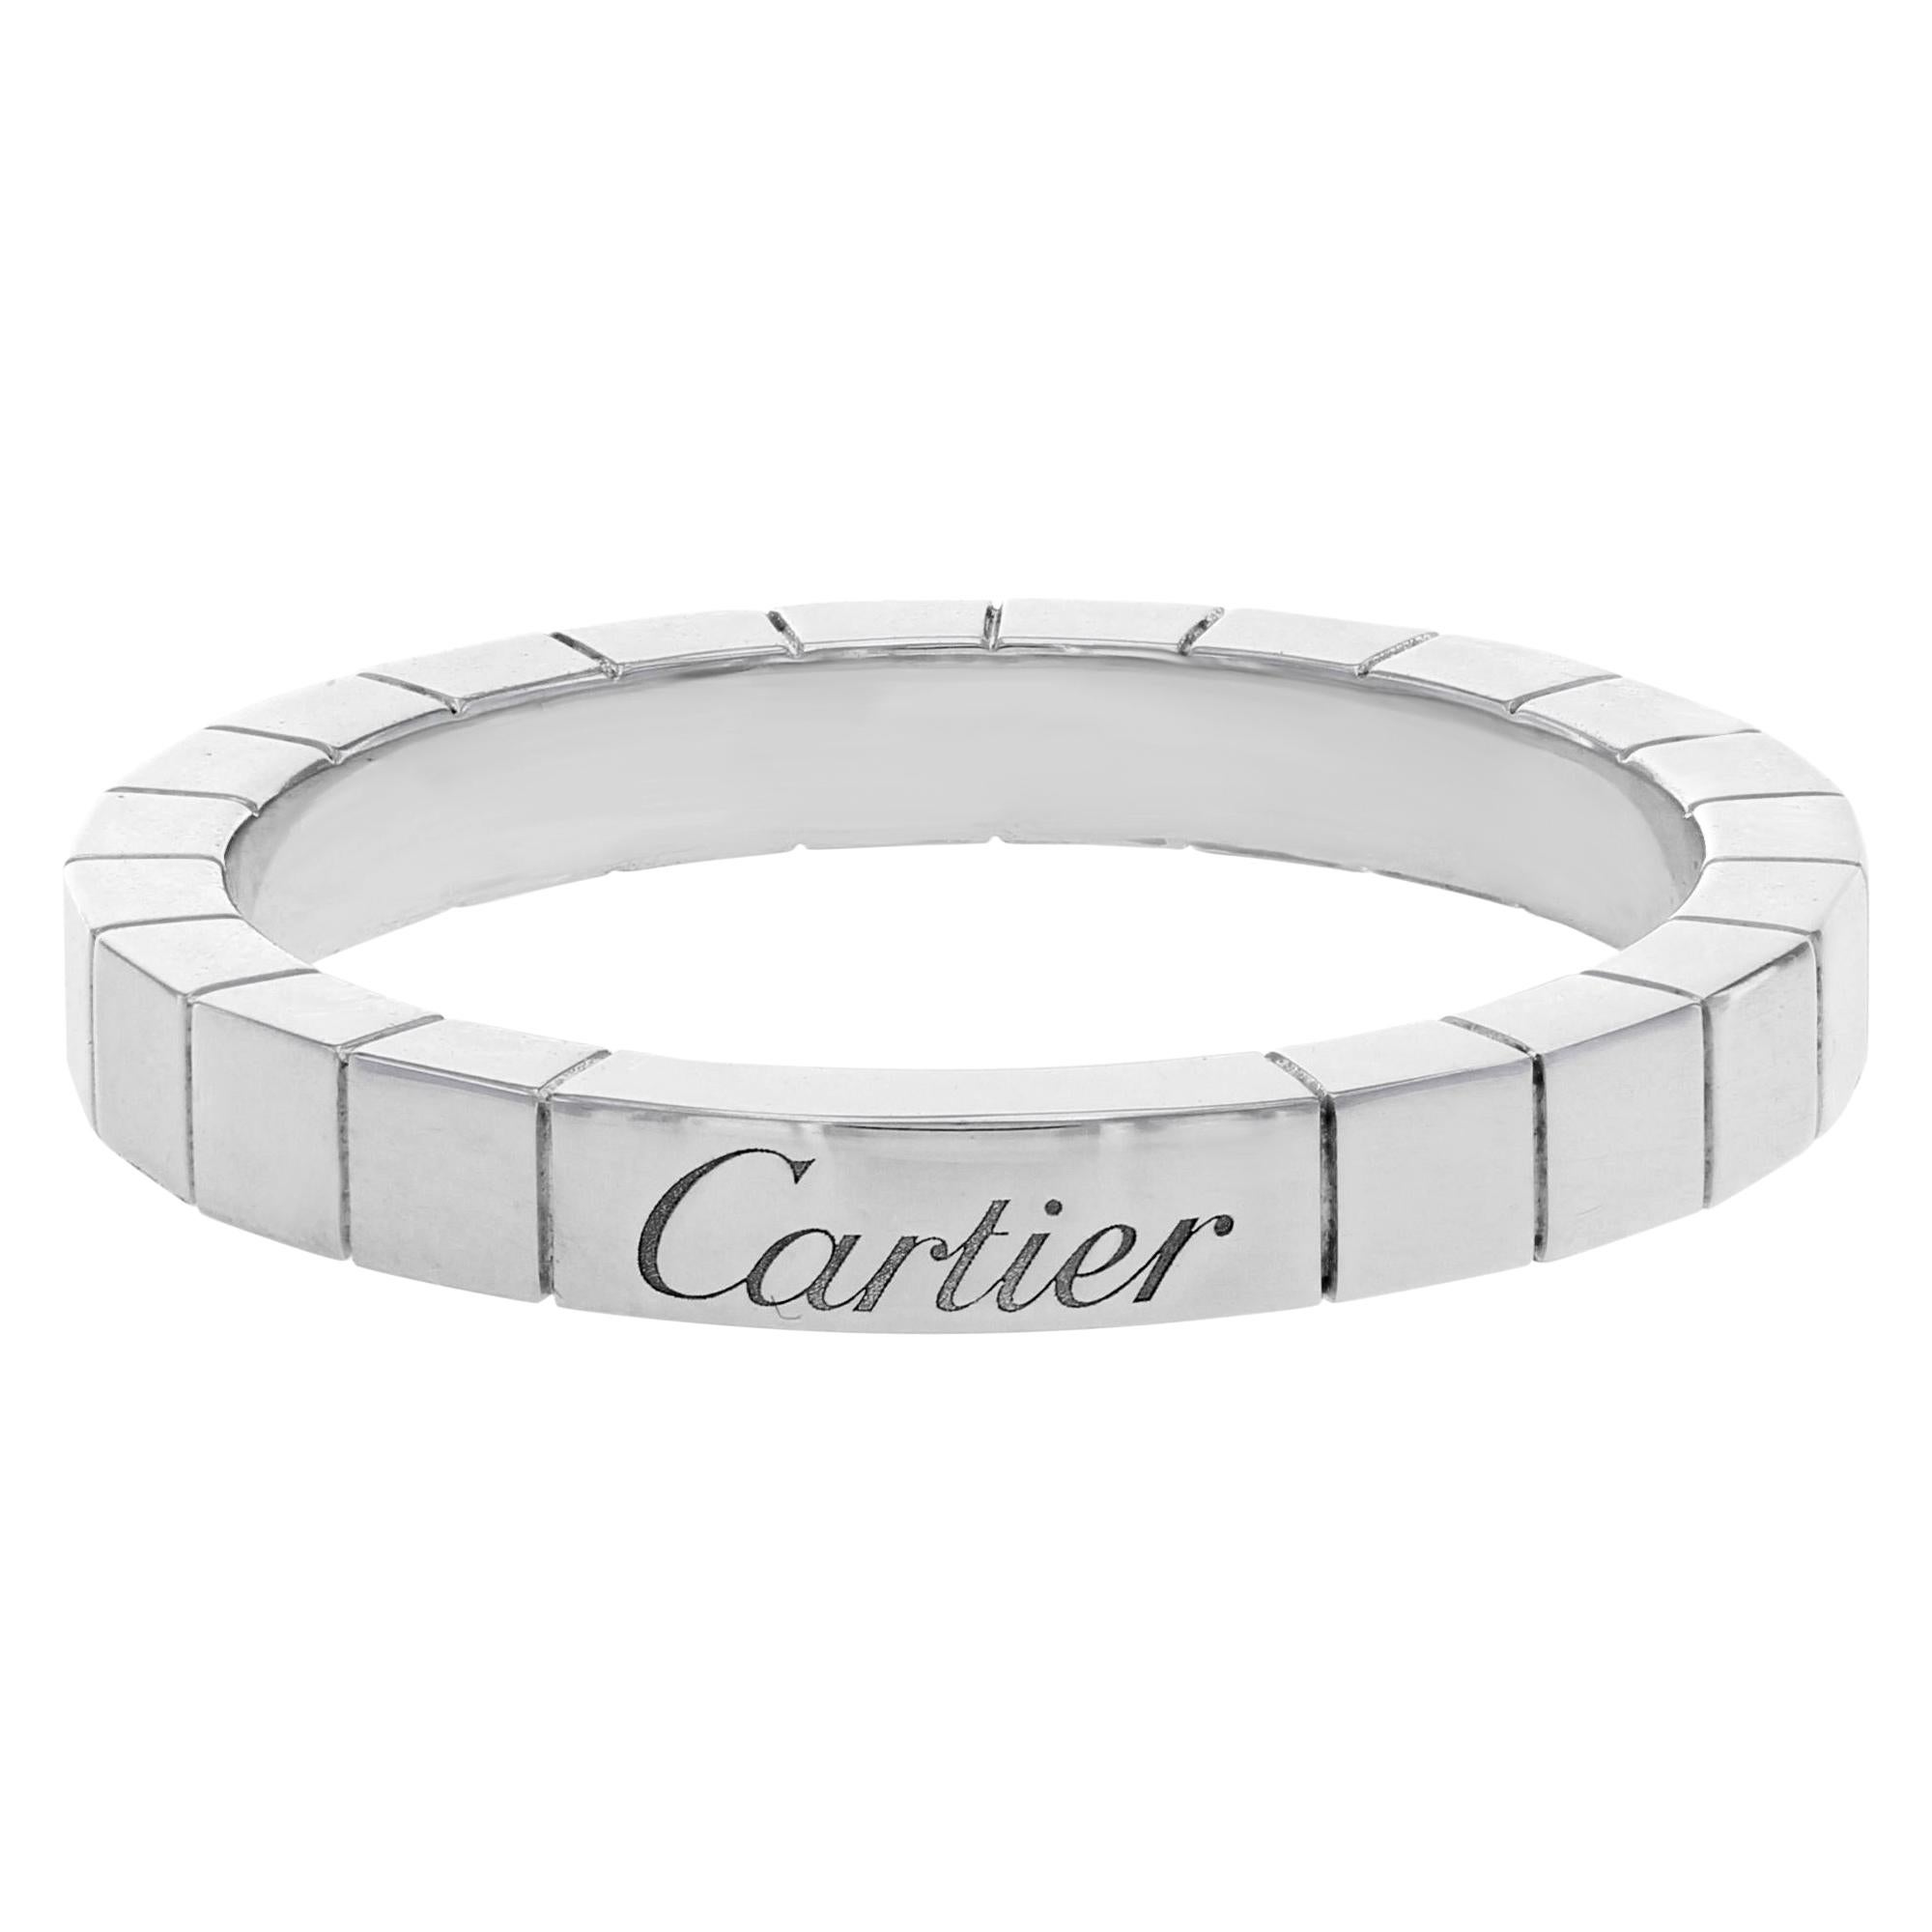 Cartier Wedding Ring Lanieres 18 Karat White Gold Unisex Band